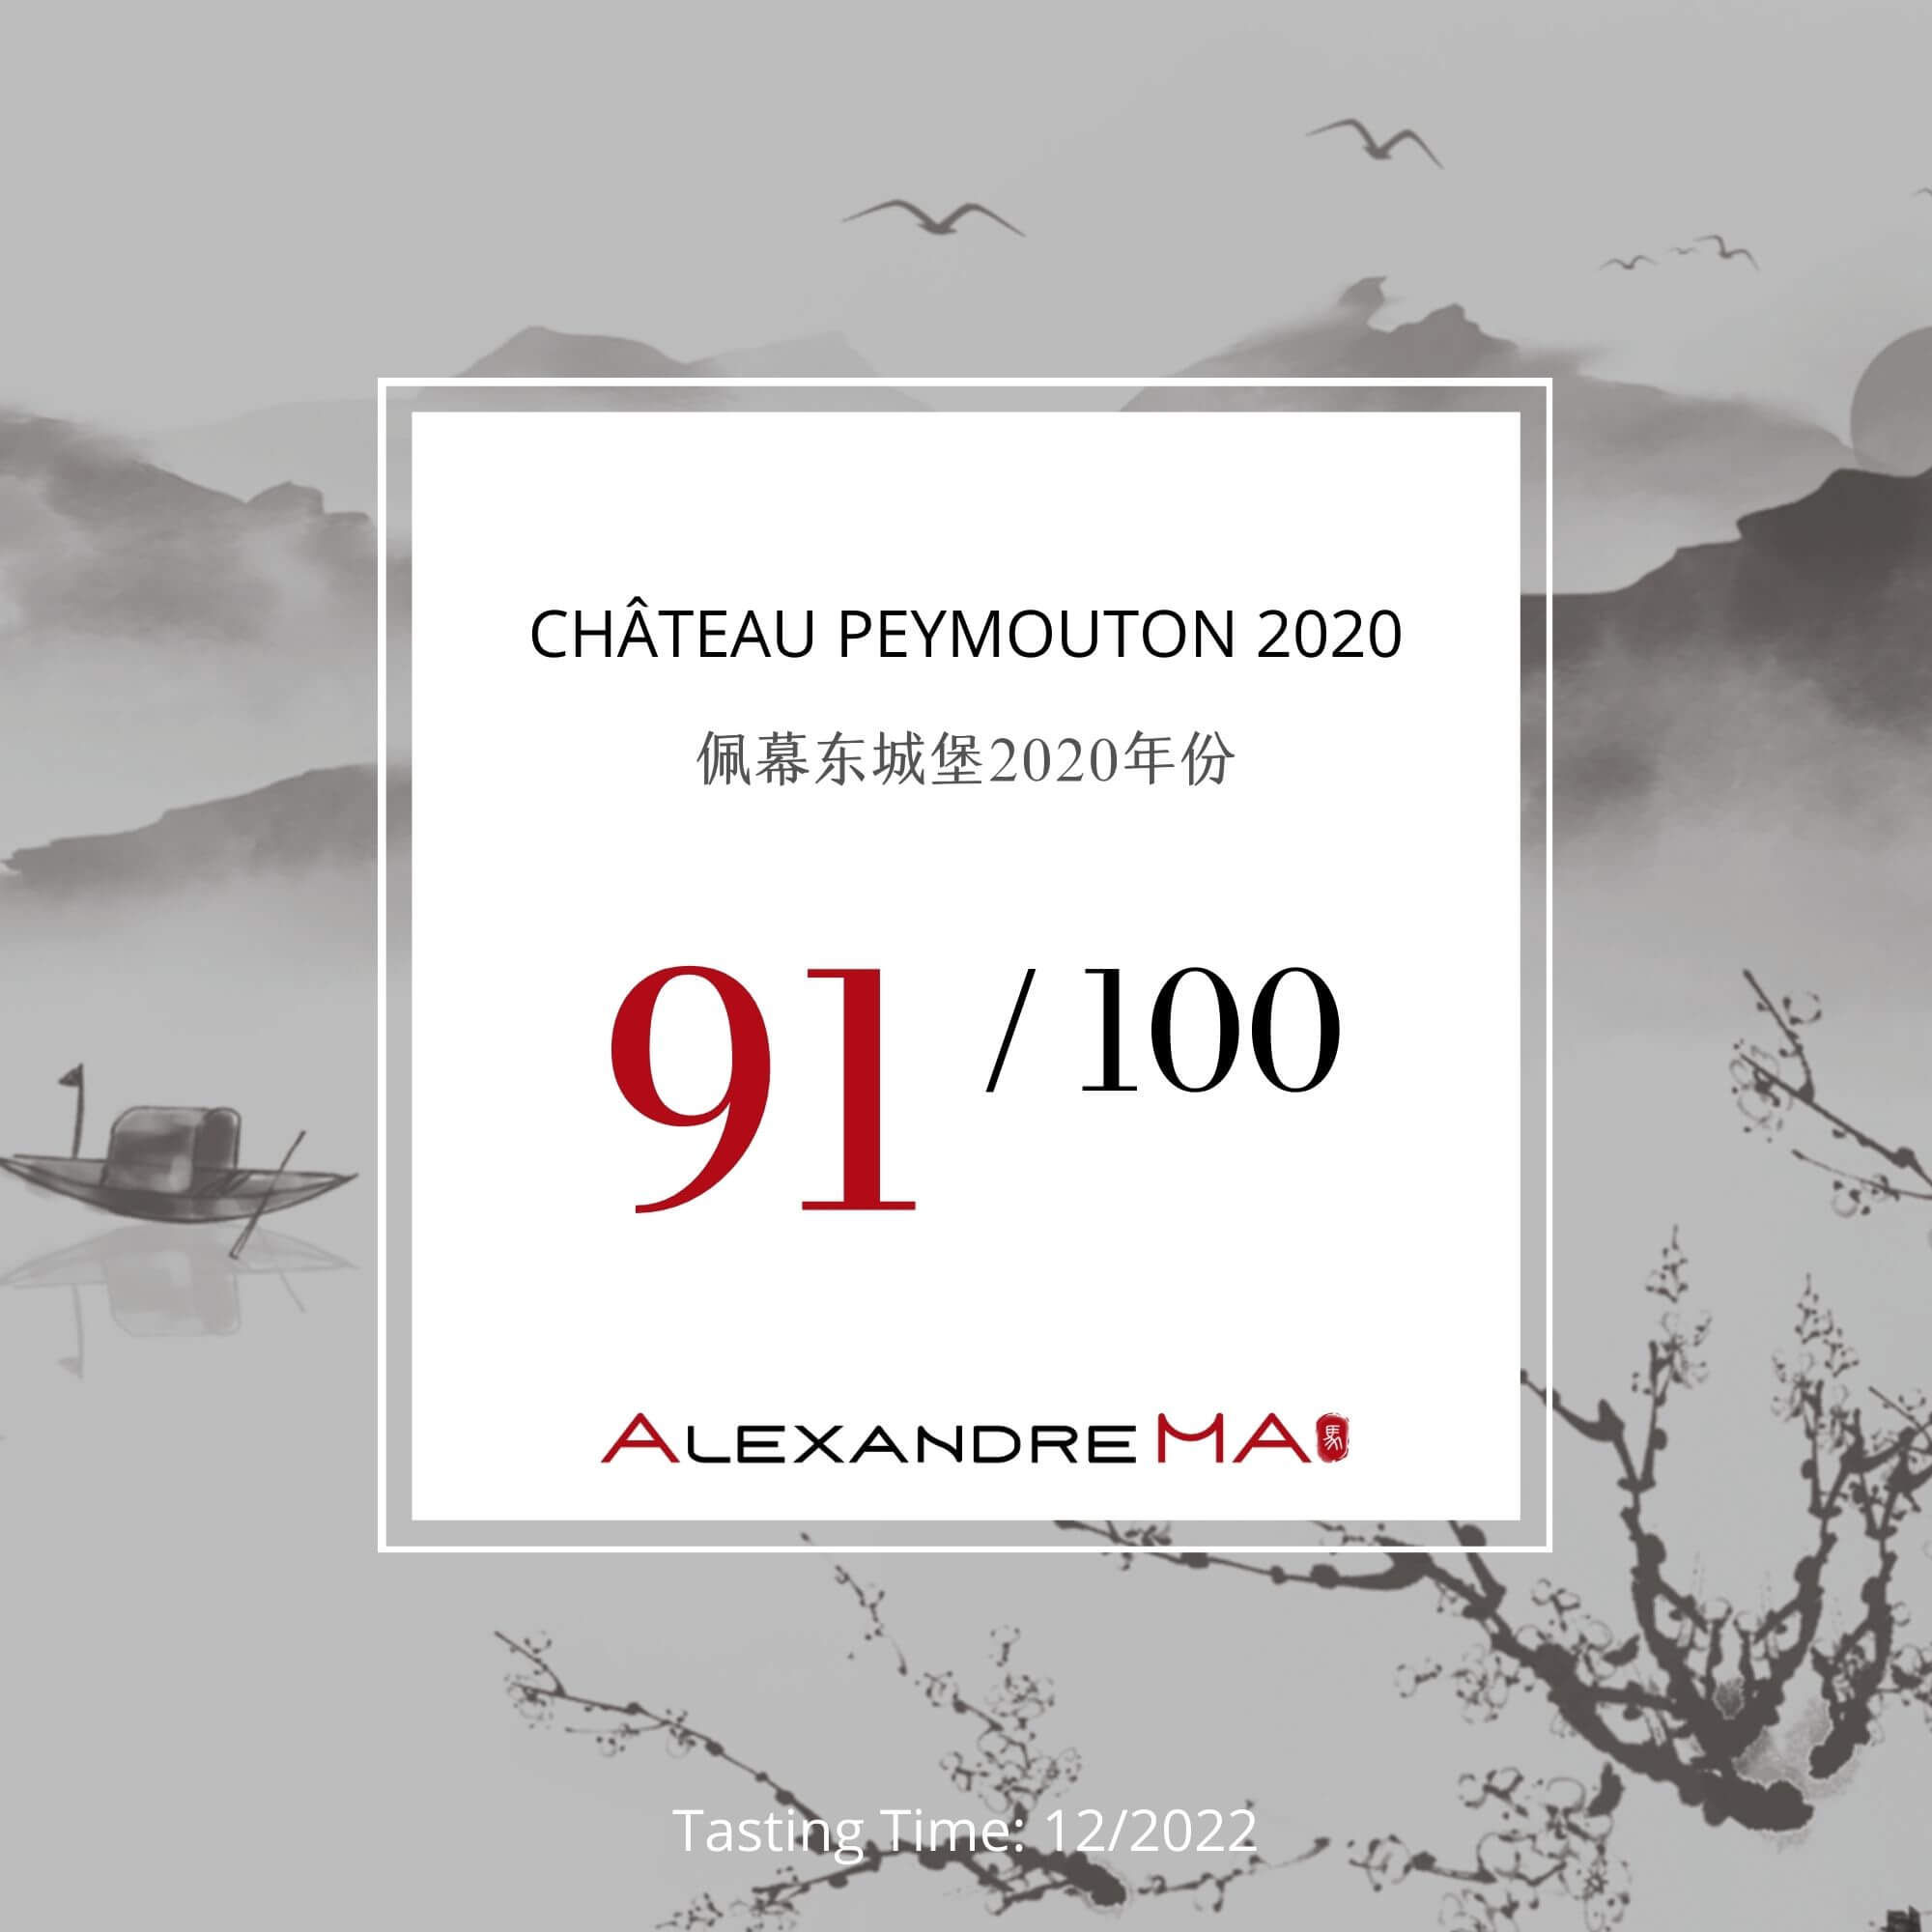 Château Peymouton 2020 - Alexandre MA